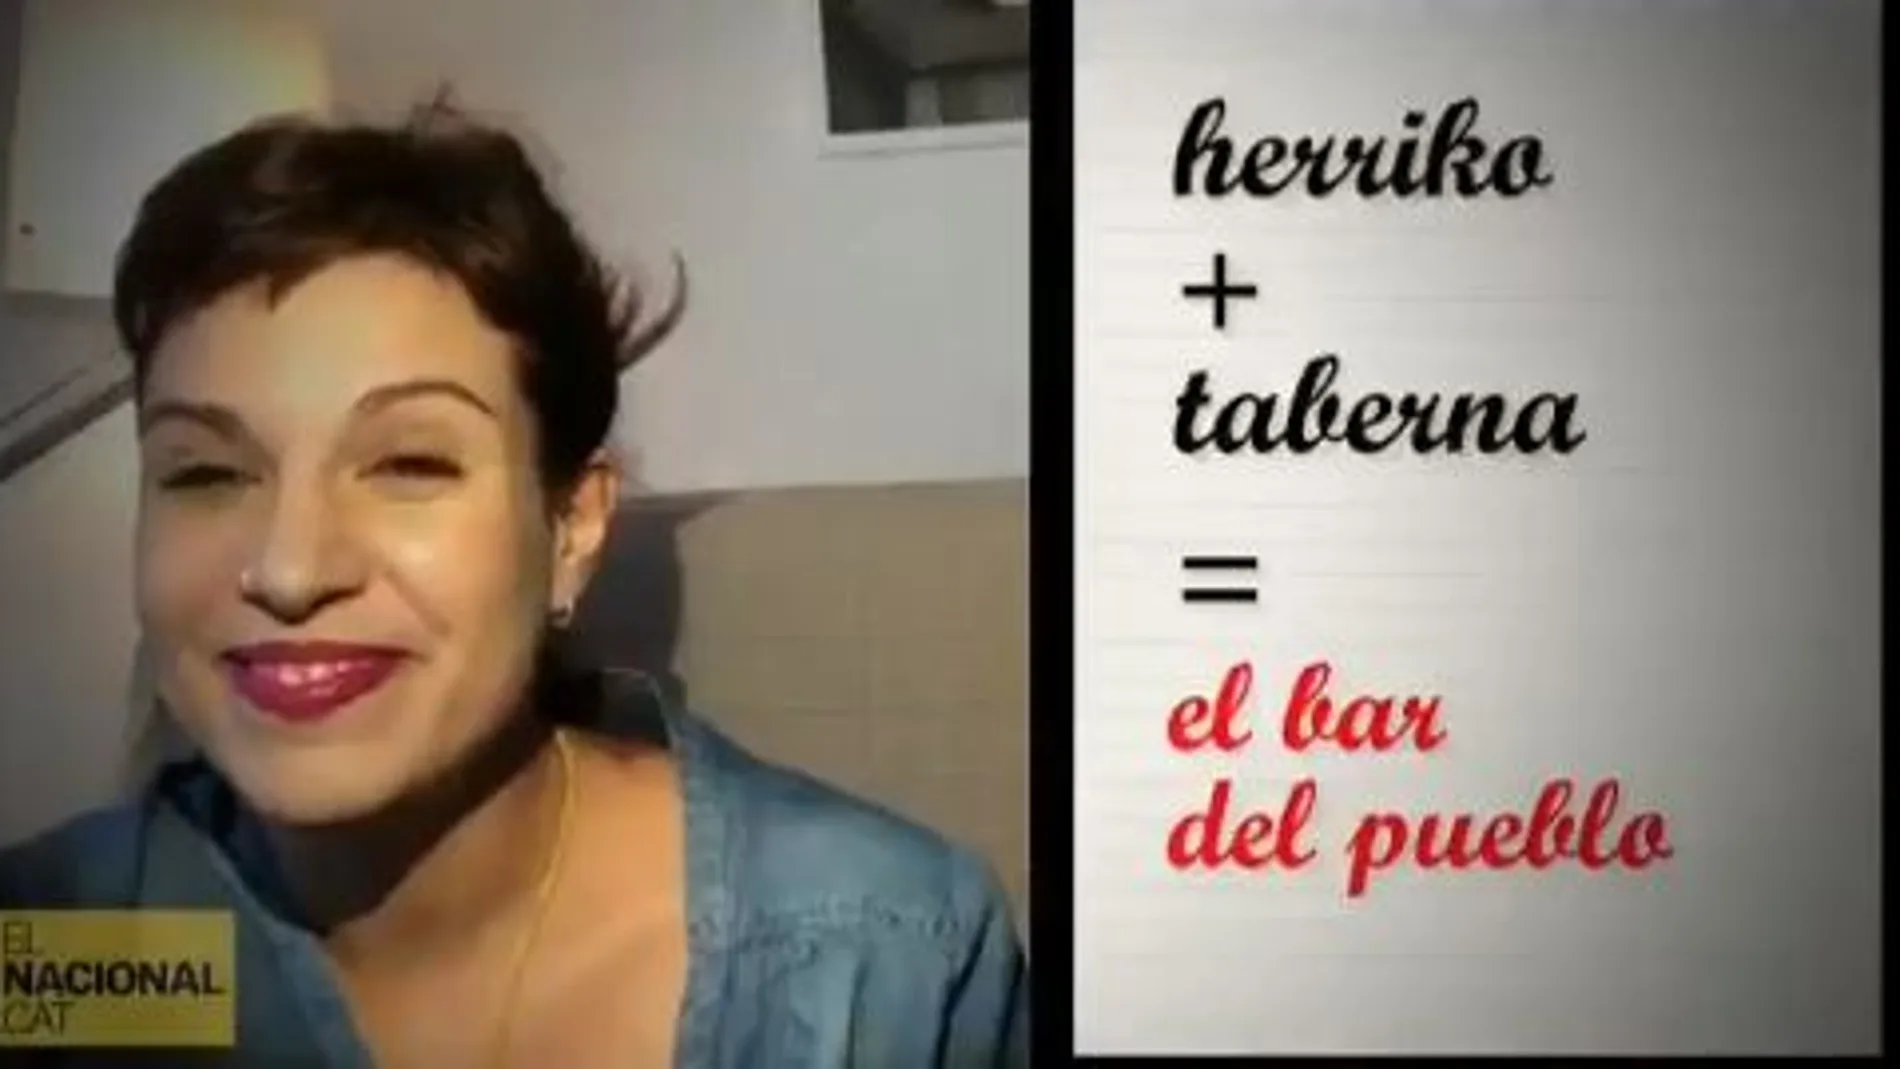 Instante del vídeo en el que Beatriz Talegón da su peculiar lección de euskera